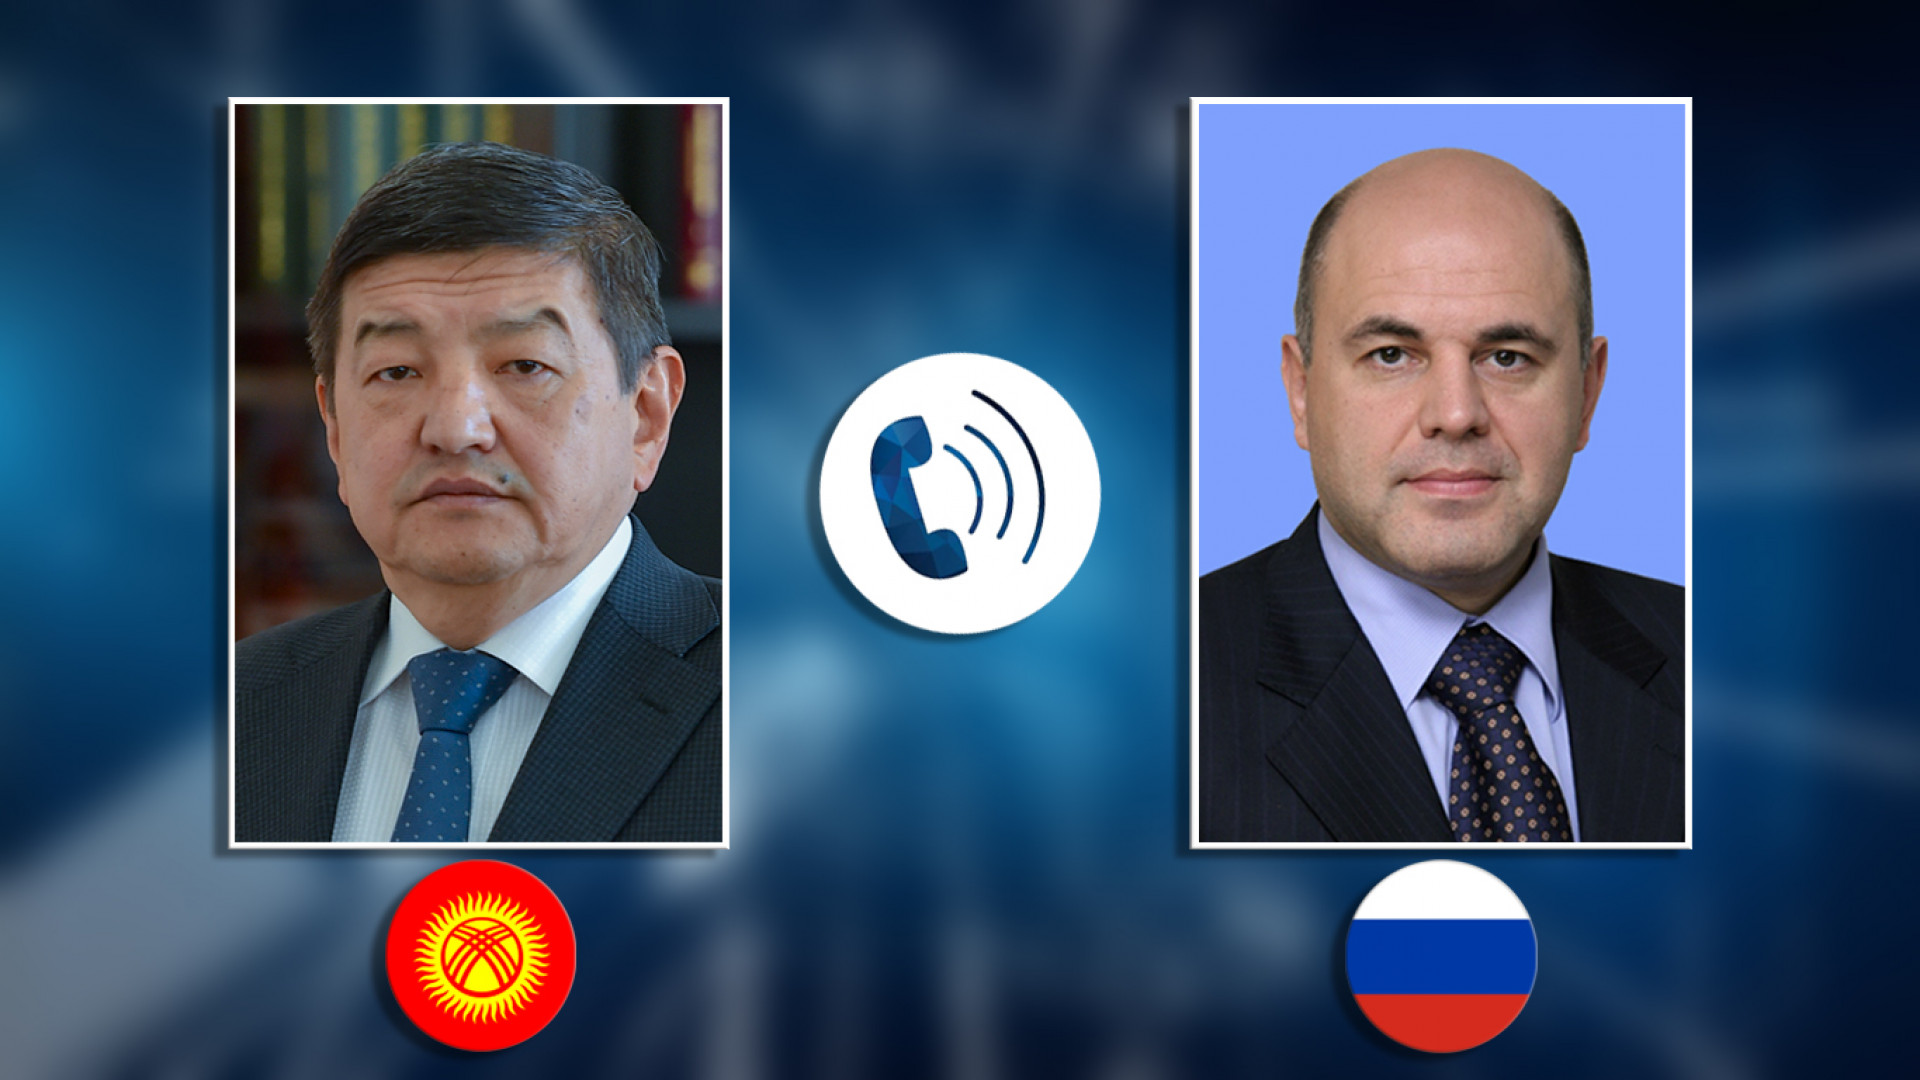 Акылбек Жапаров и Михаил Мишустин обсудили торговое сотрудничество